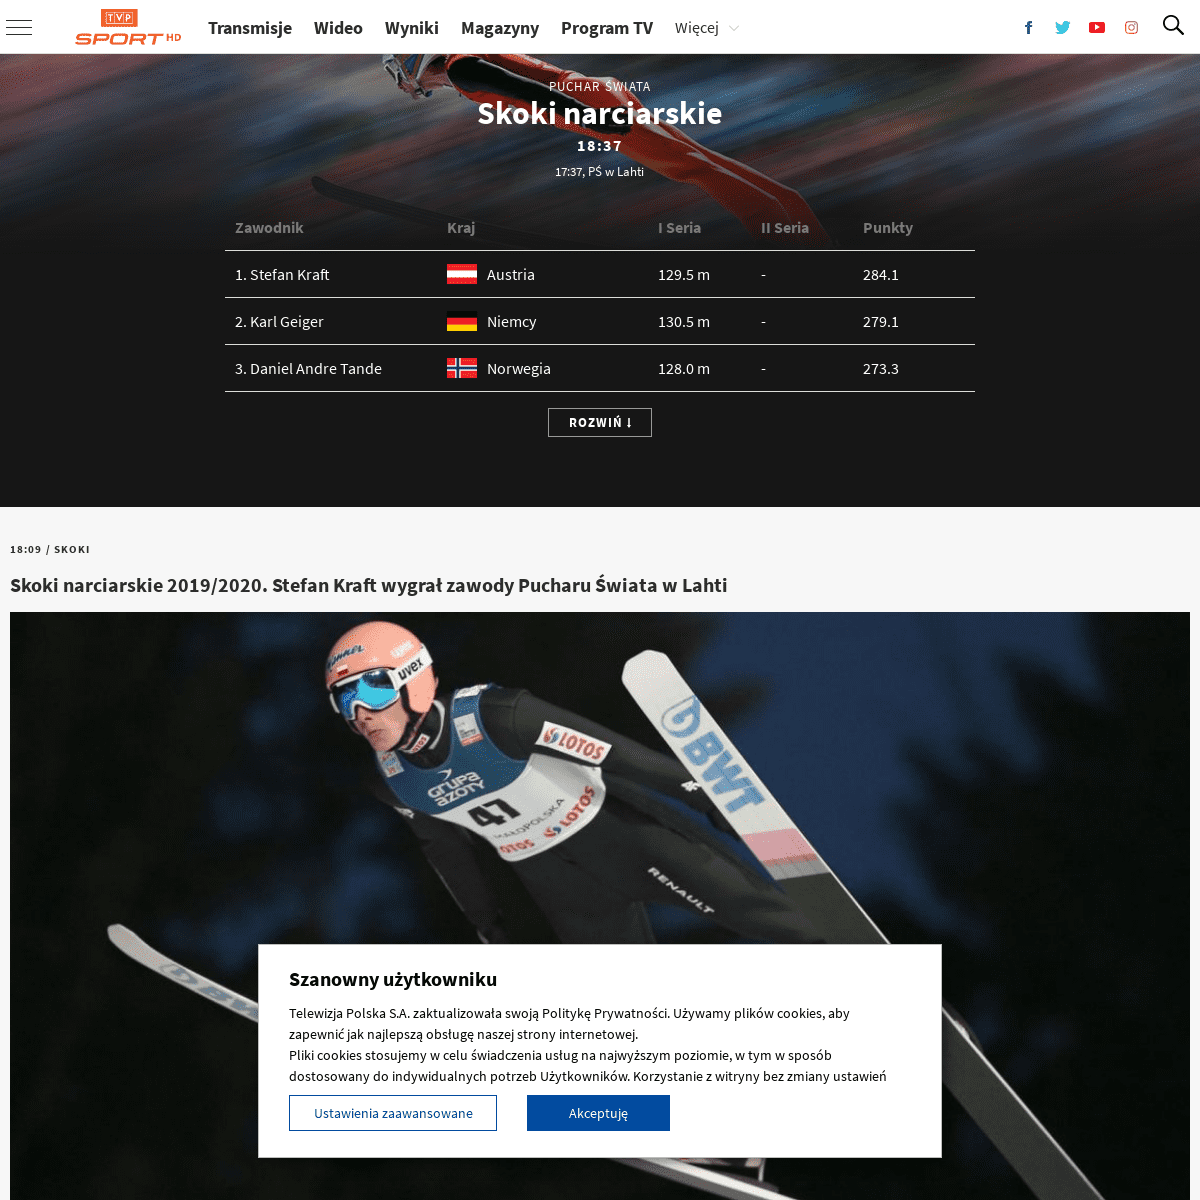 A complete backup of sport.tvp.pl/46890087/skoki-narciarskie-20192020-stefan-kraft-wygral-zawody-pucharu-swiata-w-lahti